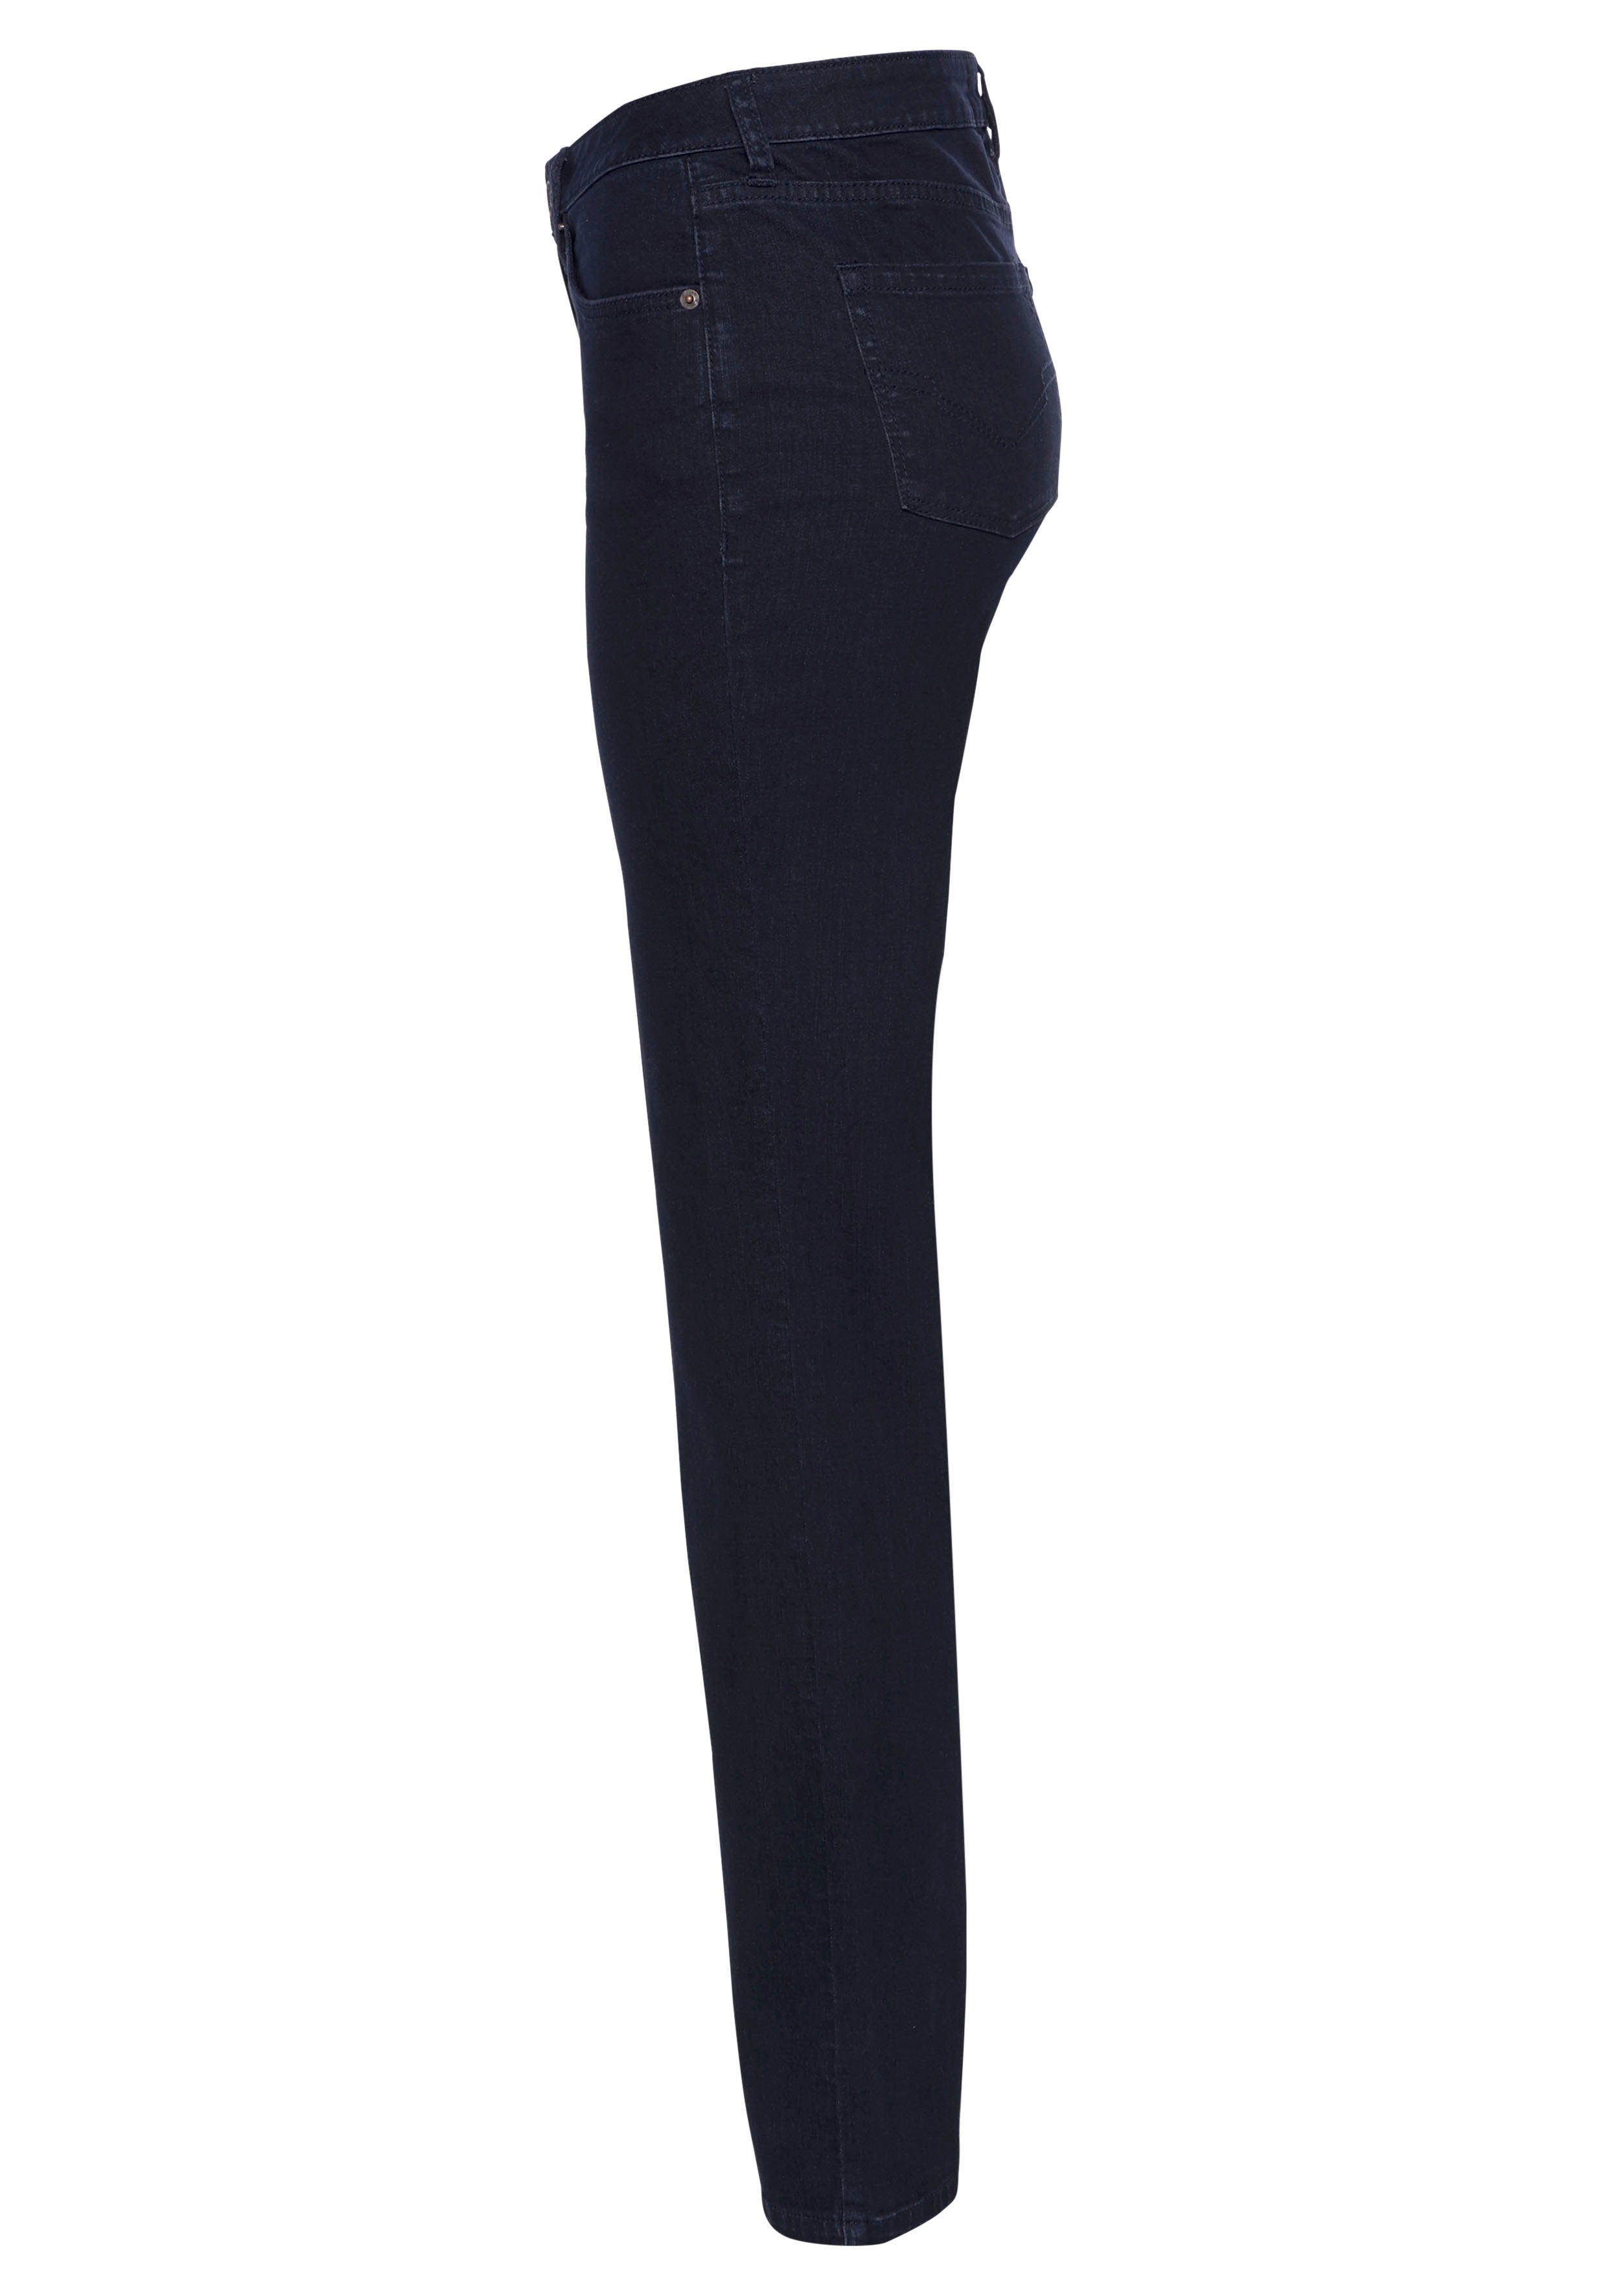 Damen Jeans H.I.S Straight-Jeans Mid-Waist Ökologische, wassersparende Produktion durch OZON WASH